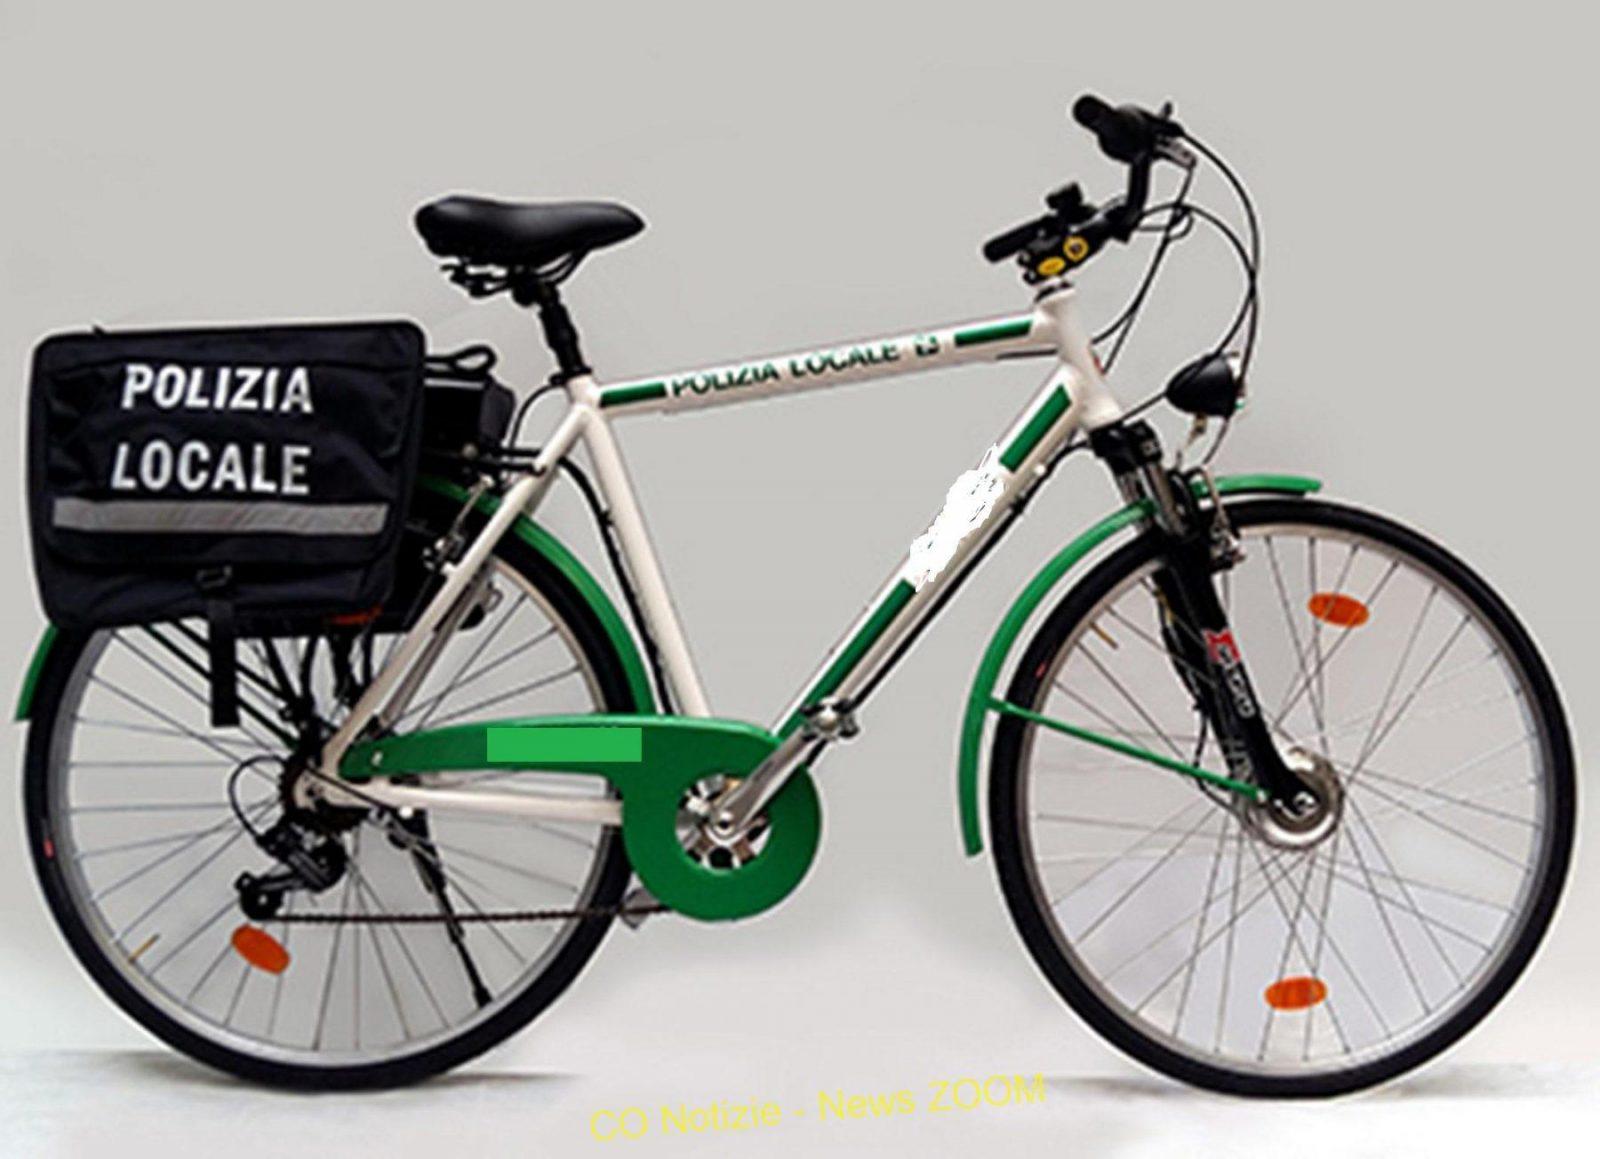 . Polizia locale in e-bike. Boffalora - 21/07/2021